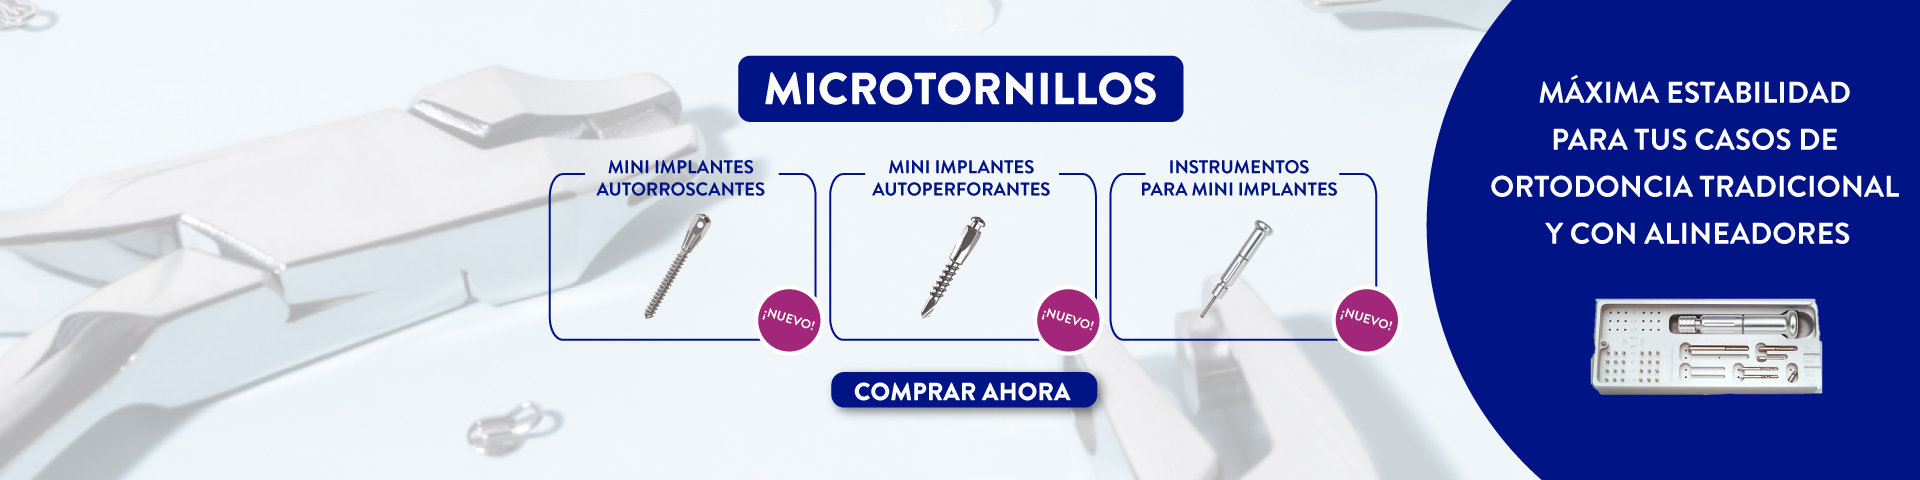 microtonillos